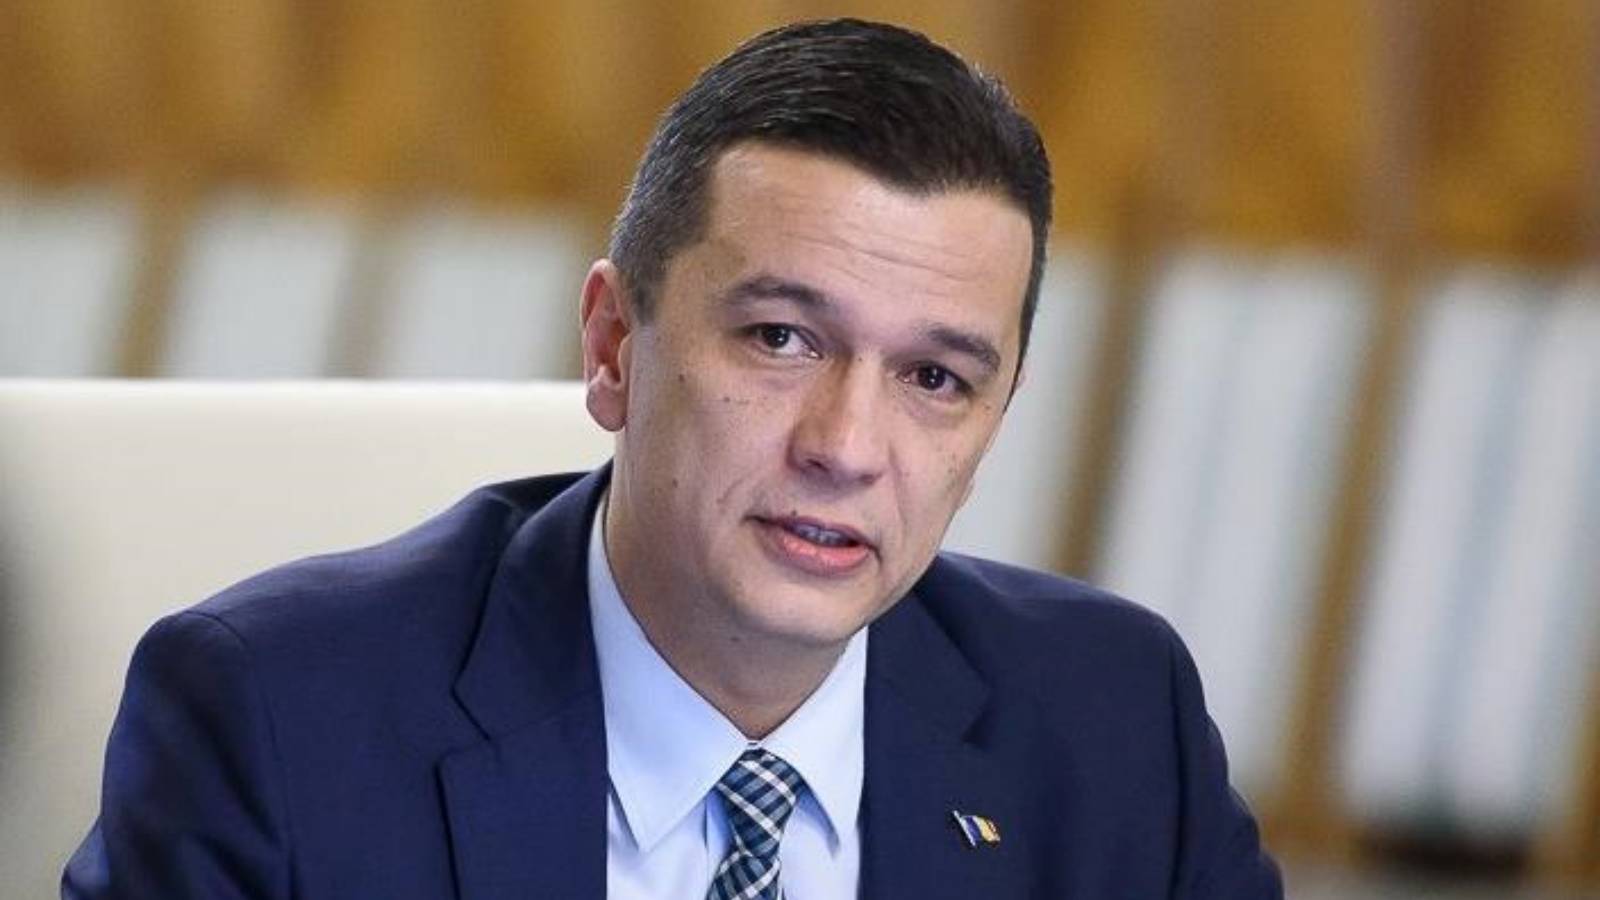 Sorin Grindeanu Anuntul Oficial Investitiile Importante Romania